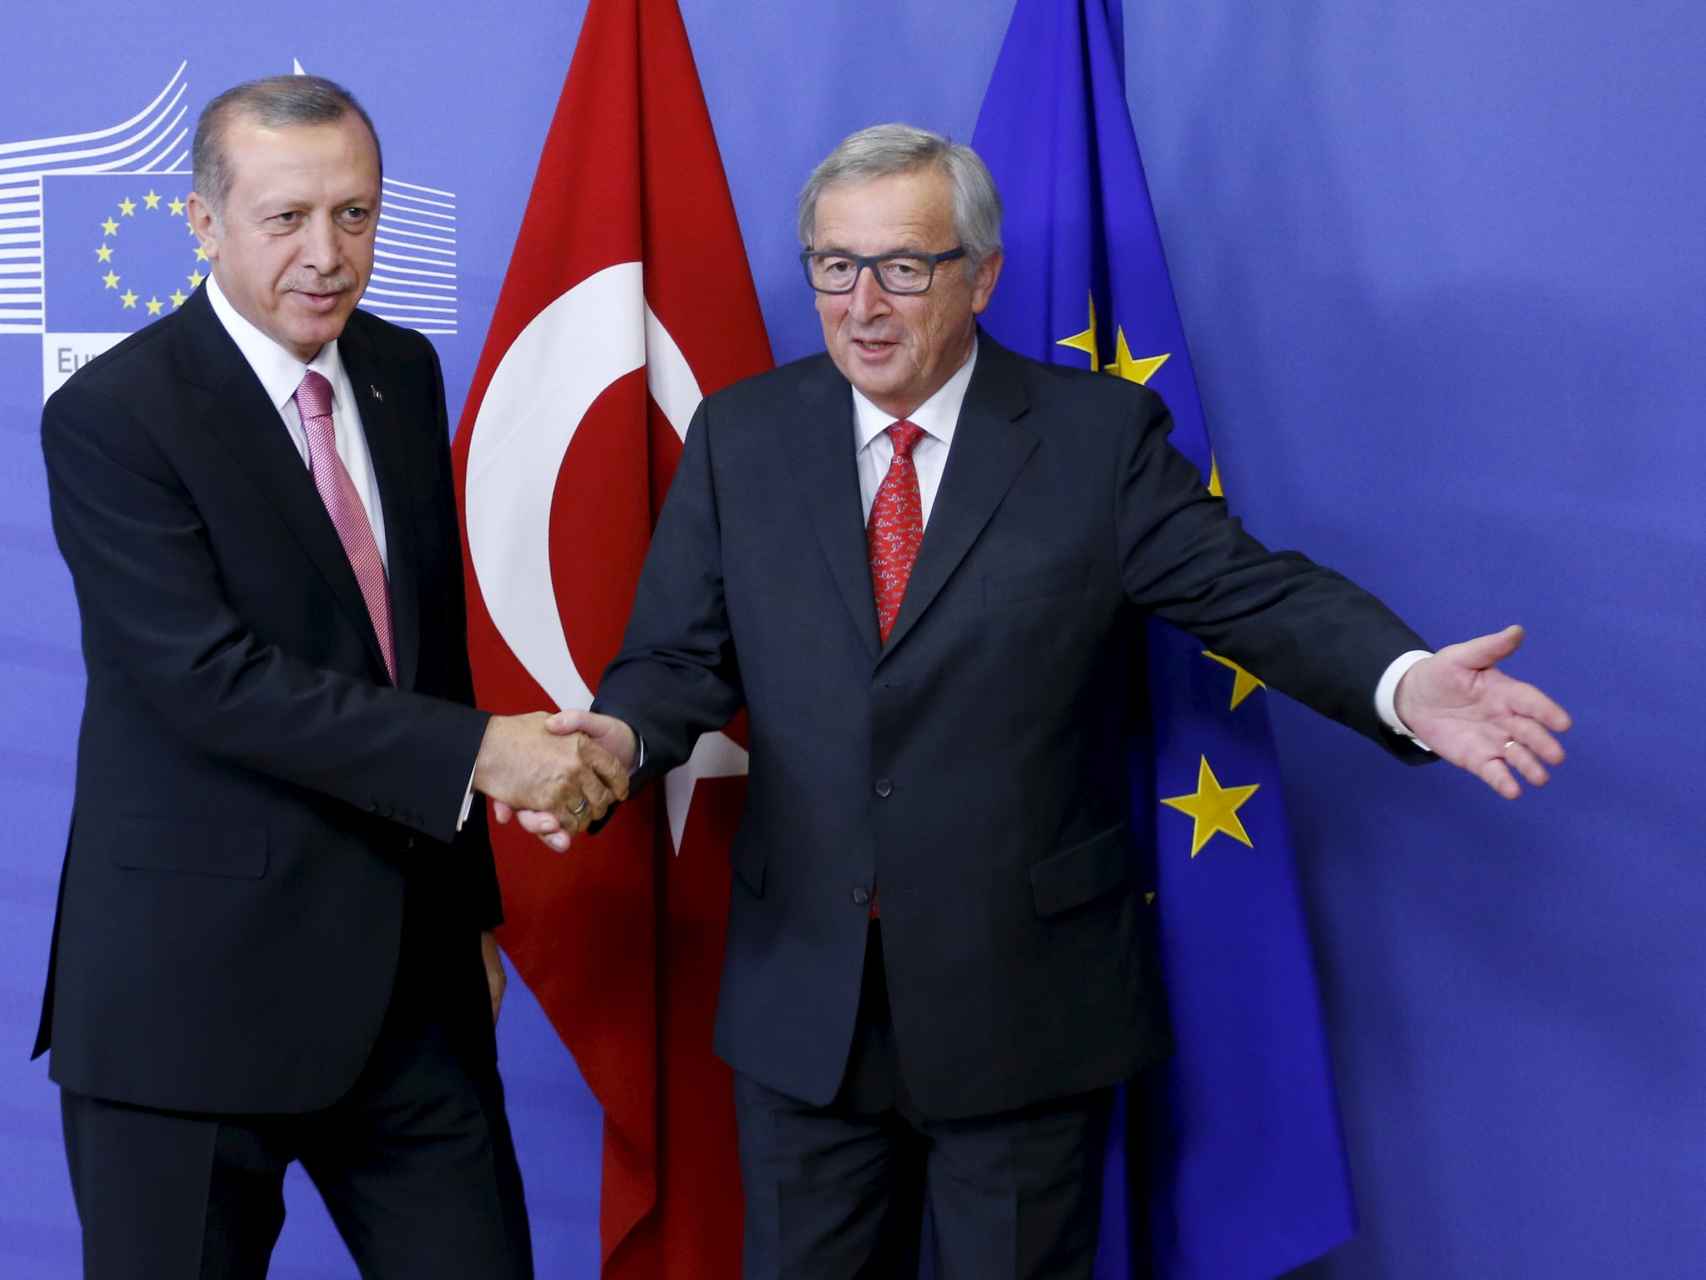 El presidente de la CE, Jean-Claude Juncker, recibe al presidente turco, Recep Tayyip Erdogan